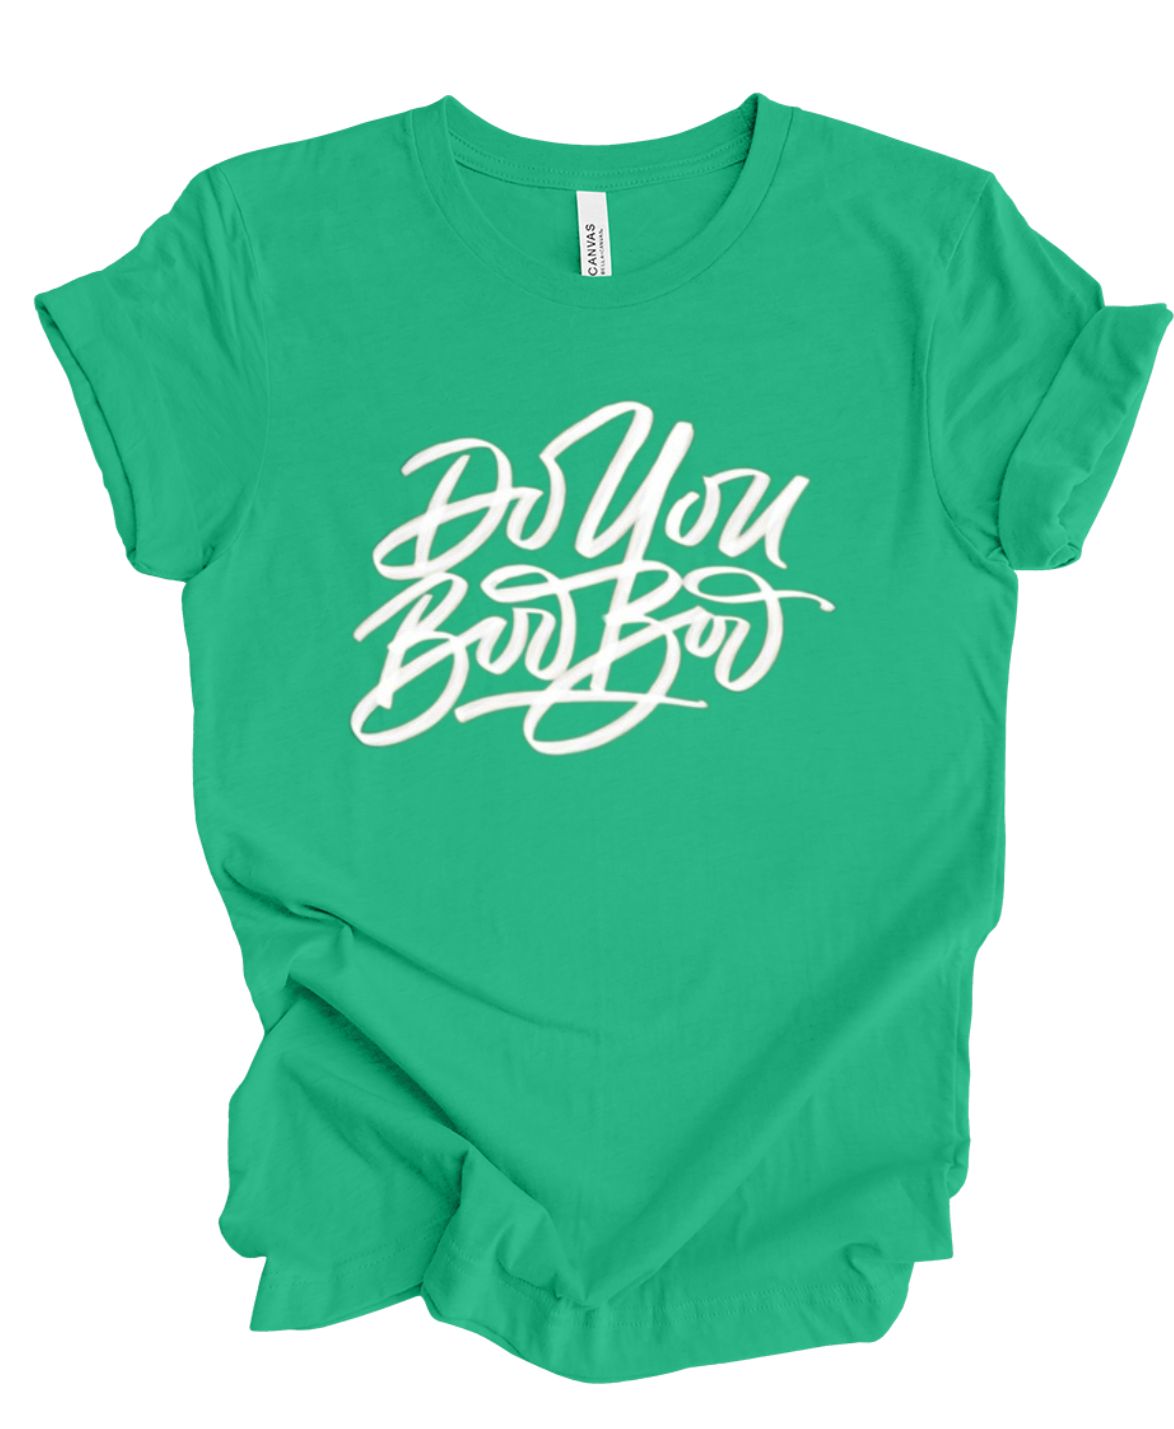 Do You Boo Boo T-shirt